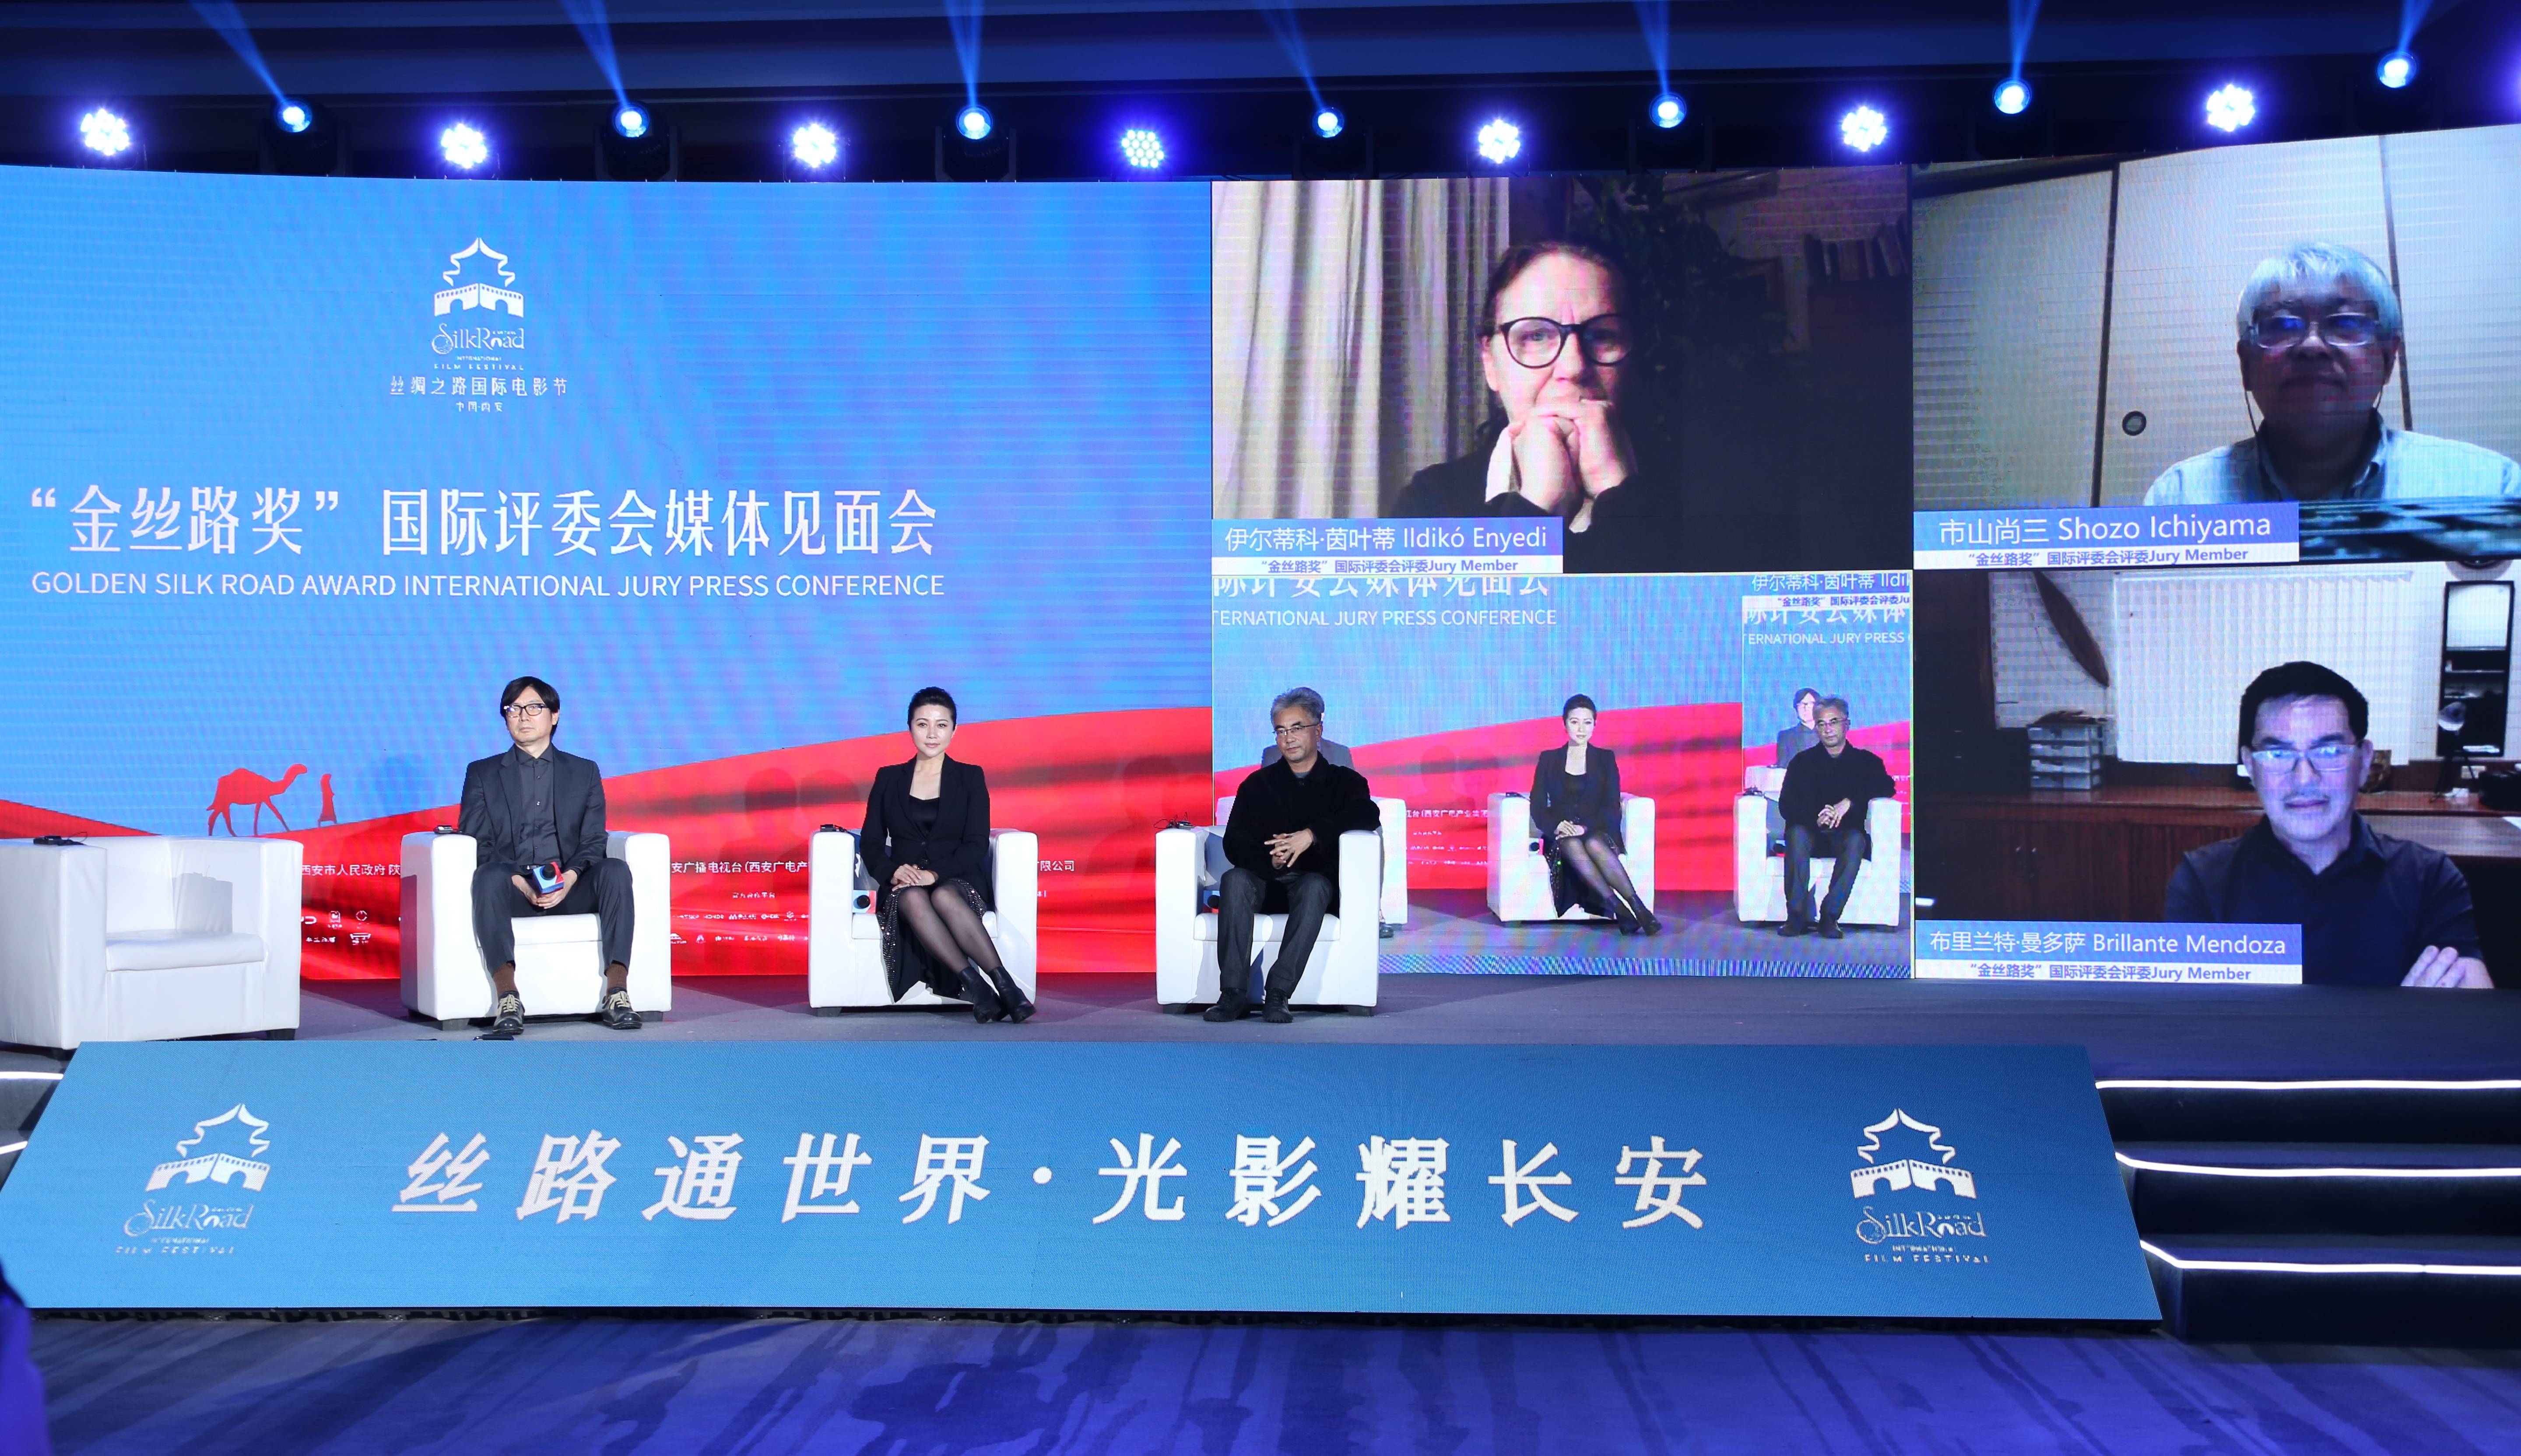 刁亦男谈中国片子在国际片子节上失色：那是巧合，我们的创做情况也有待更开放